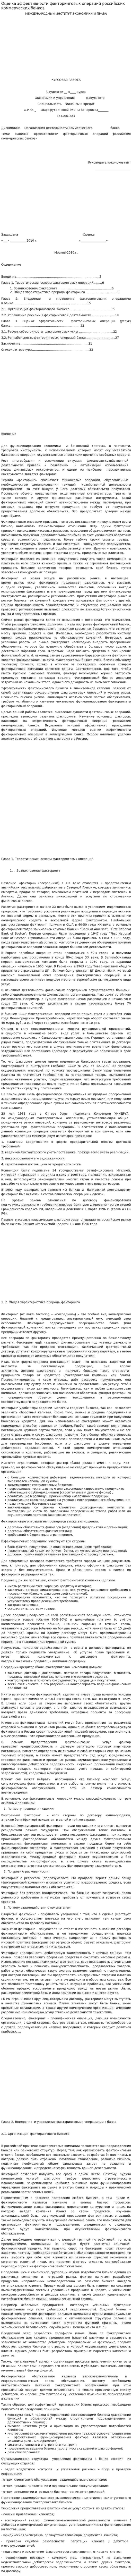 Оценка эффективности факторинговых операций российских коммерческих банков